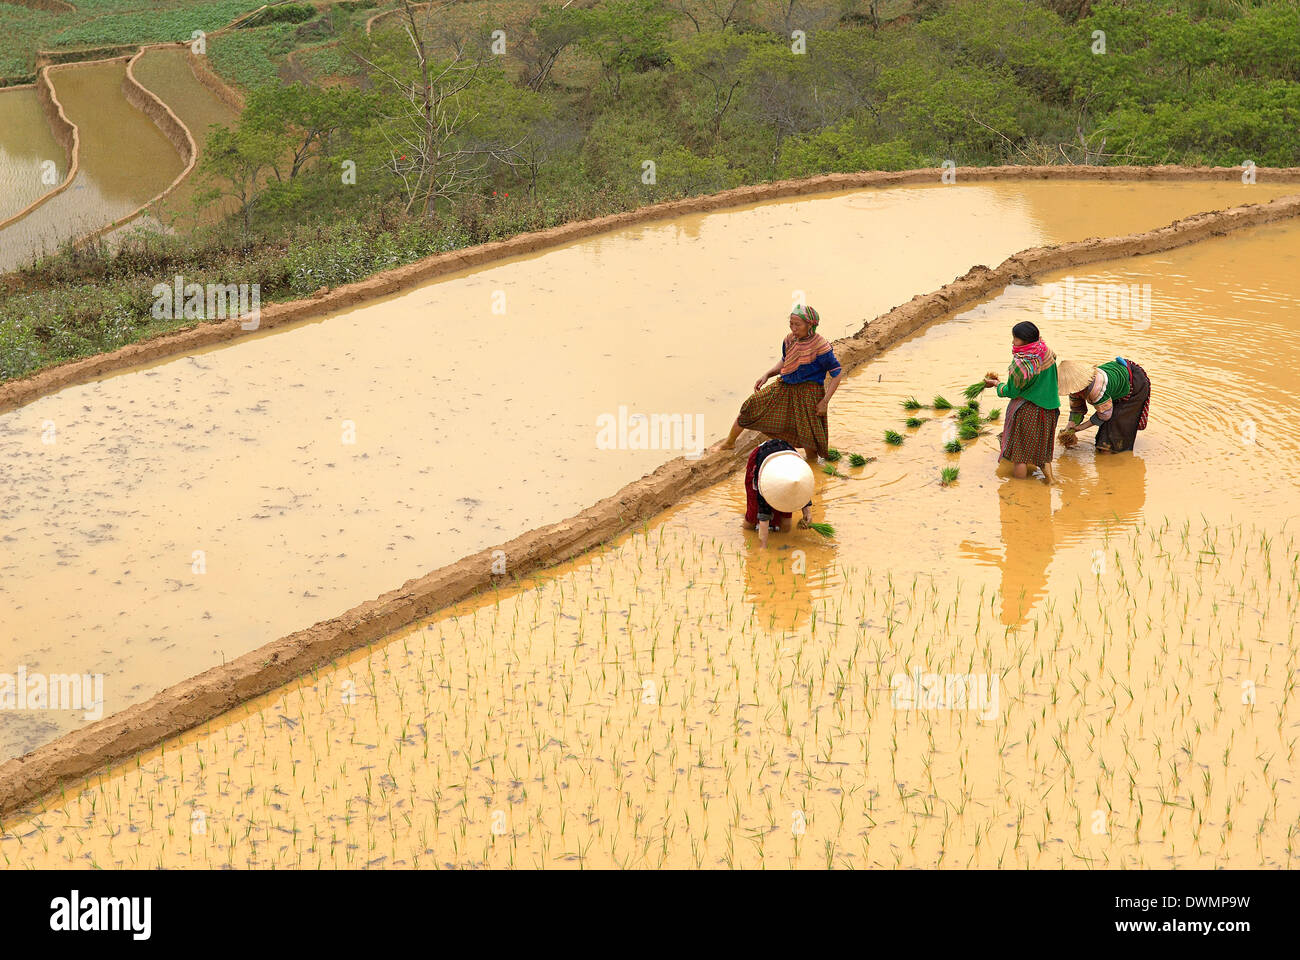 Groupe ethnique hmong fleur femmes travaillant dans le champ de riz, Bac Ha, le Vietnam, l'Indochine, l'Asie du Sud-Est, Asie Banque D'Images